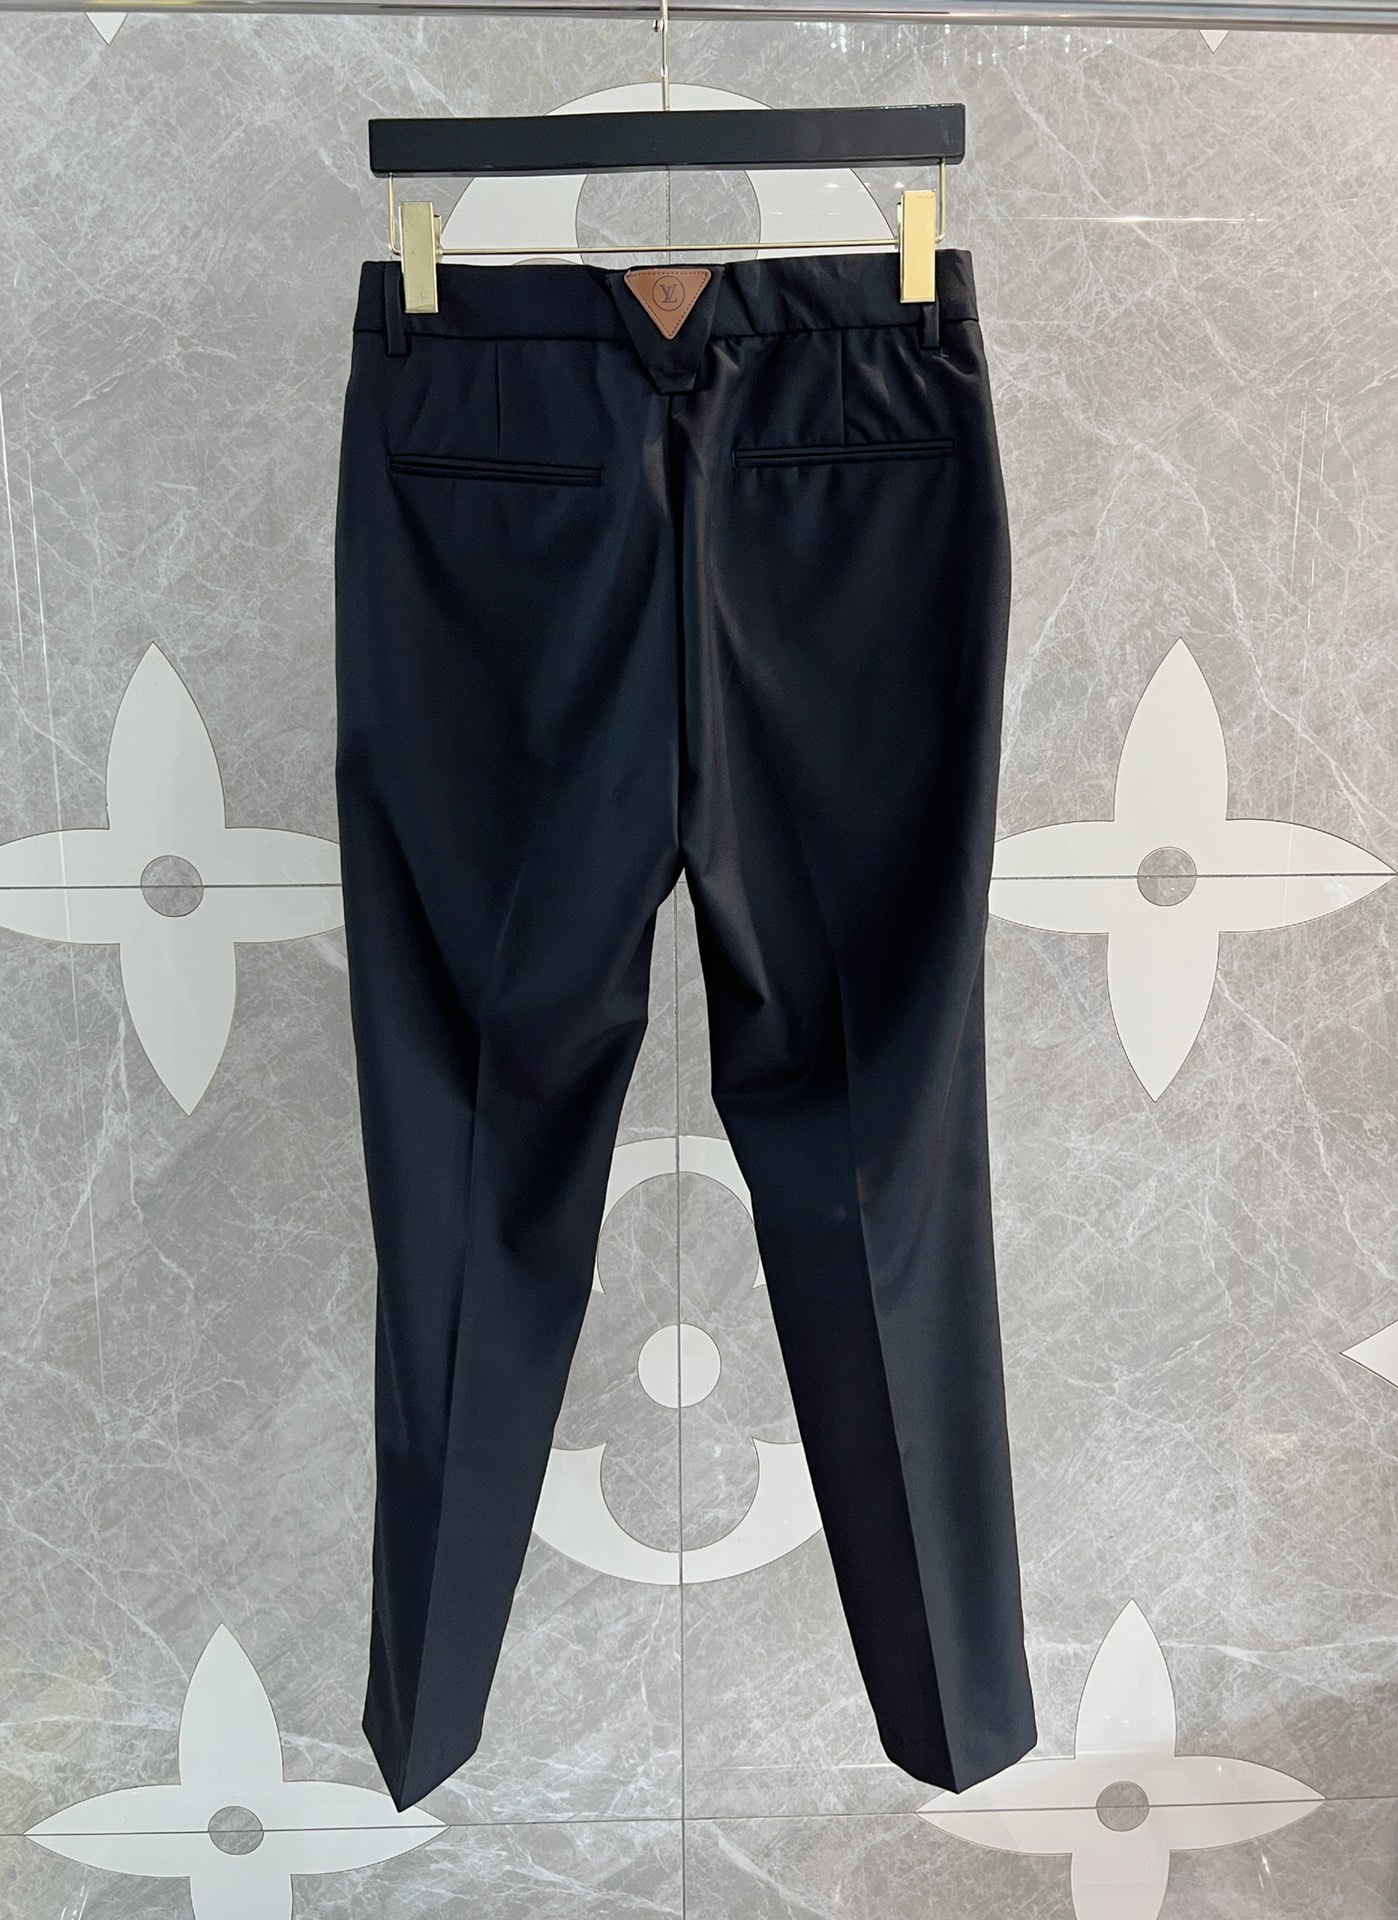 お手頃価格で ルイヴィトンのパンツコピー ファッション スラックス 光沢 美脚 夏 通勤 ズボン 品質保証 ブラック_7